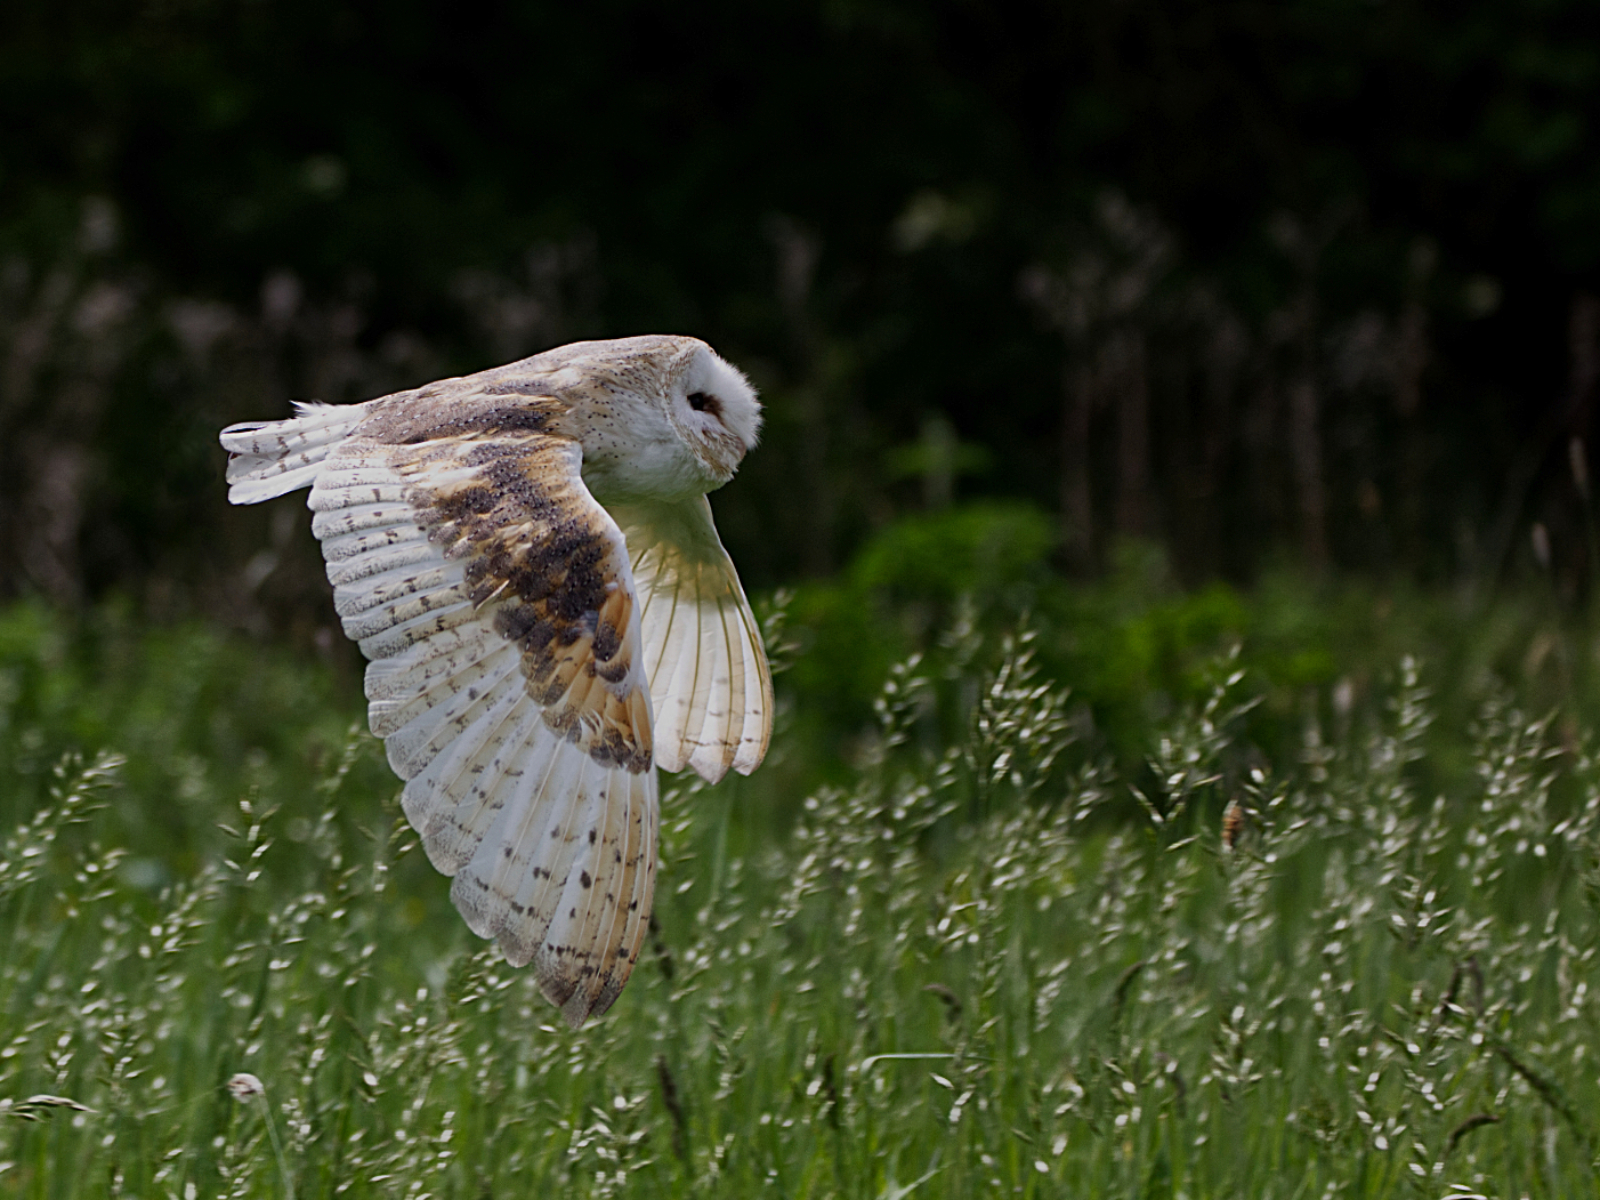 4G5A2823 - Owl in flight